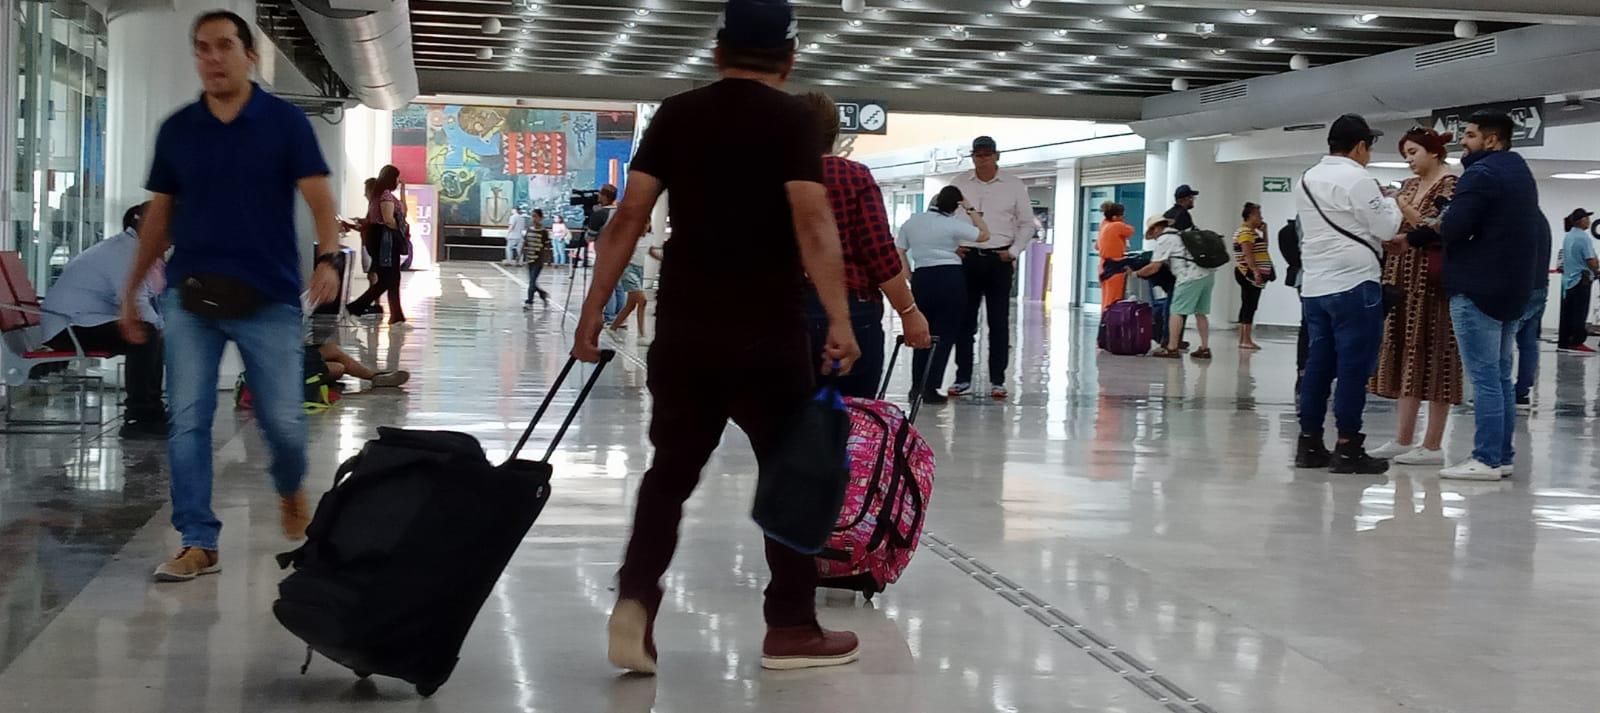 $!Aeroméxico retoma operaciones este jueves en Culiacán; Volaris, a la espera